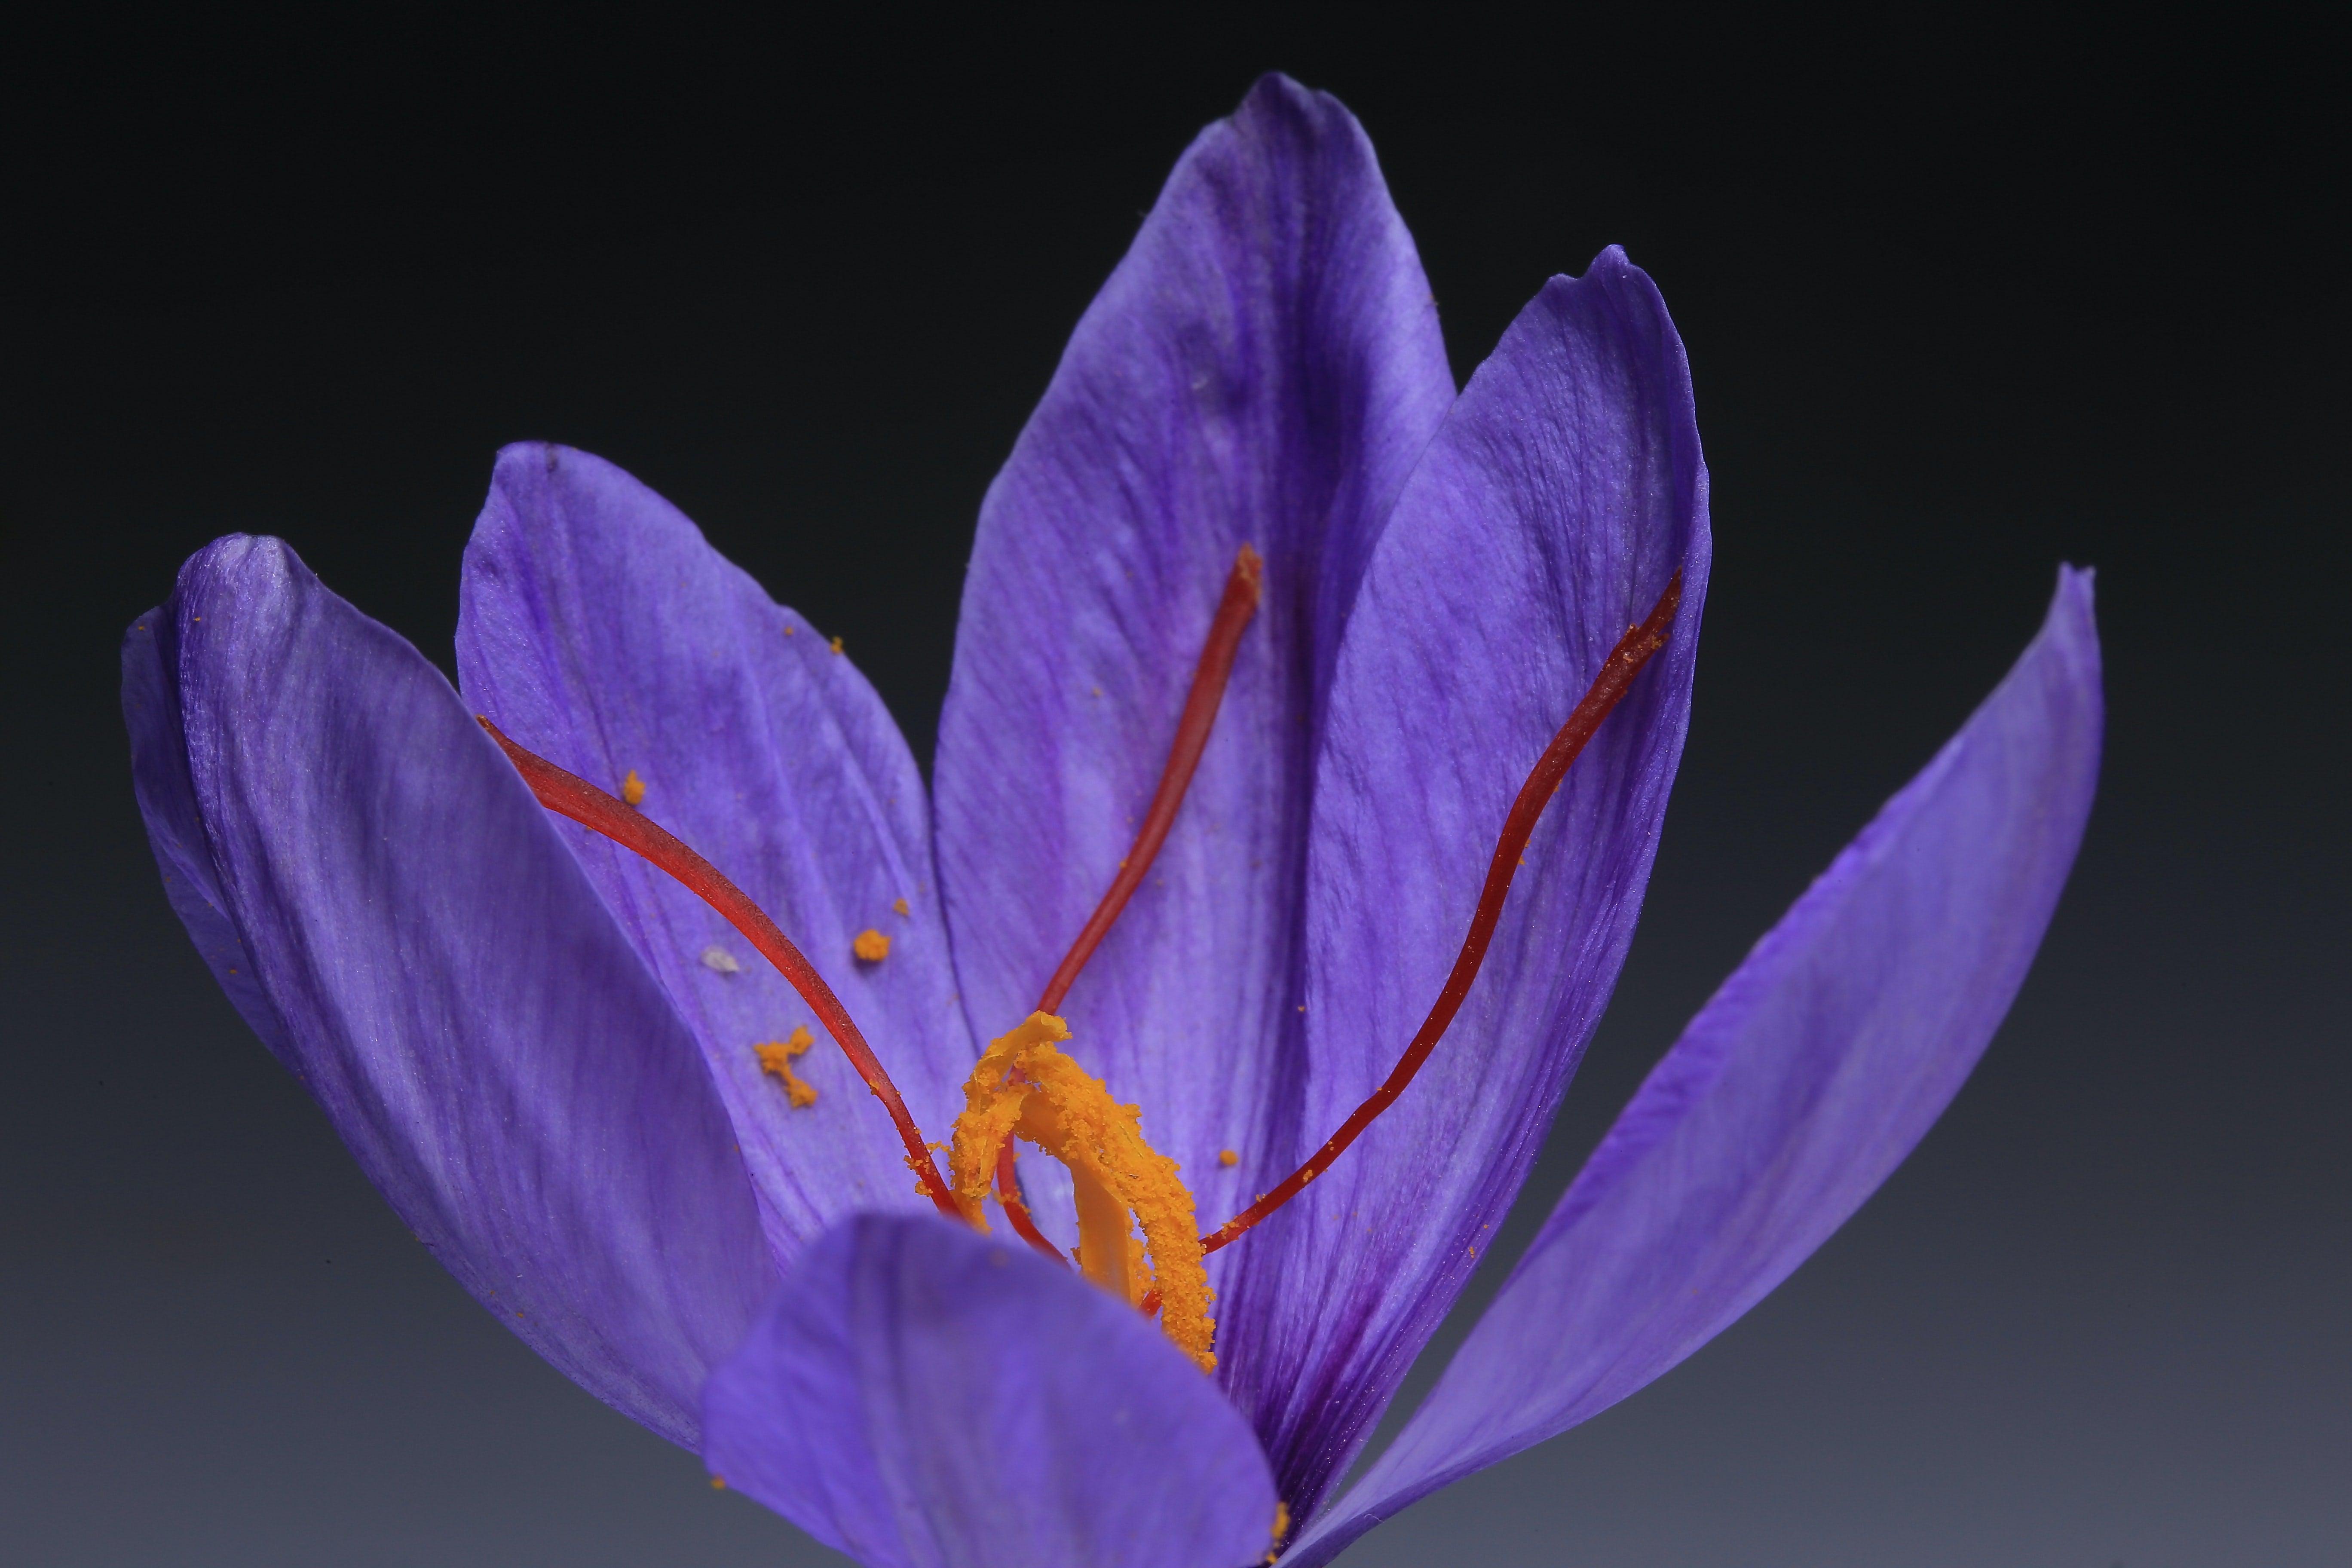 8 Health Benefits of Saffron